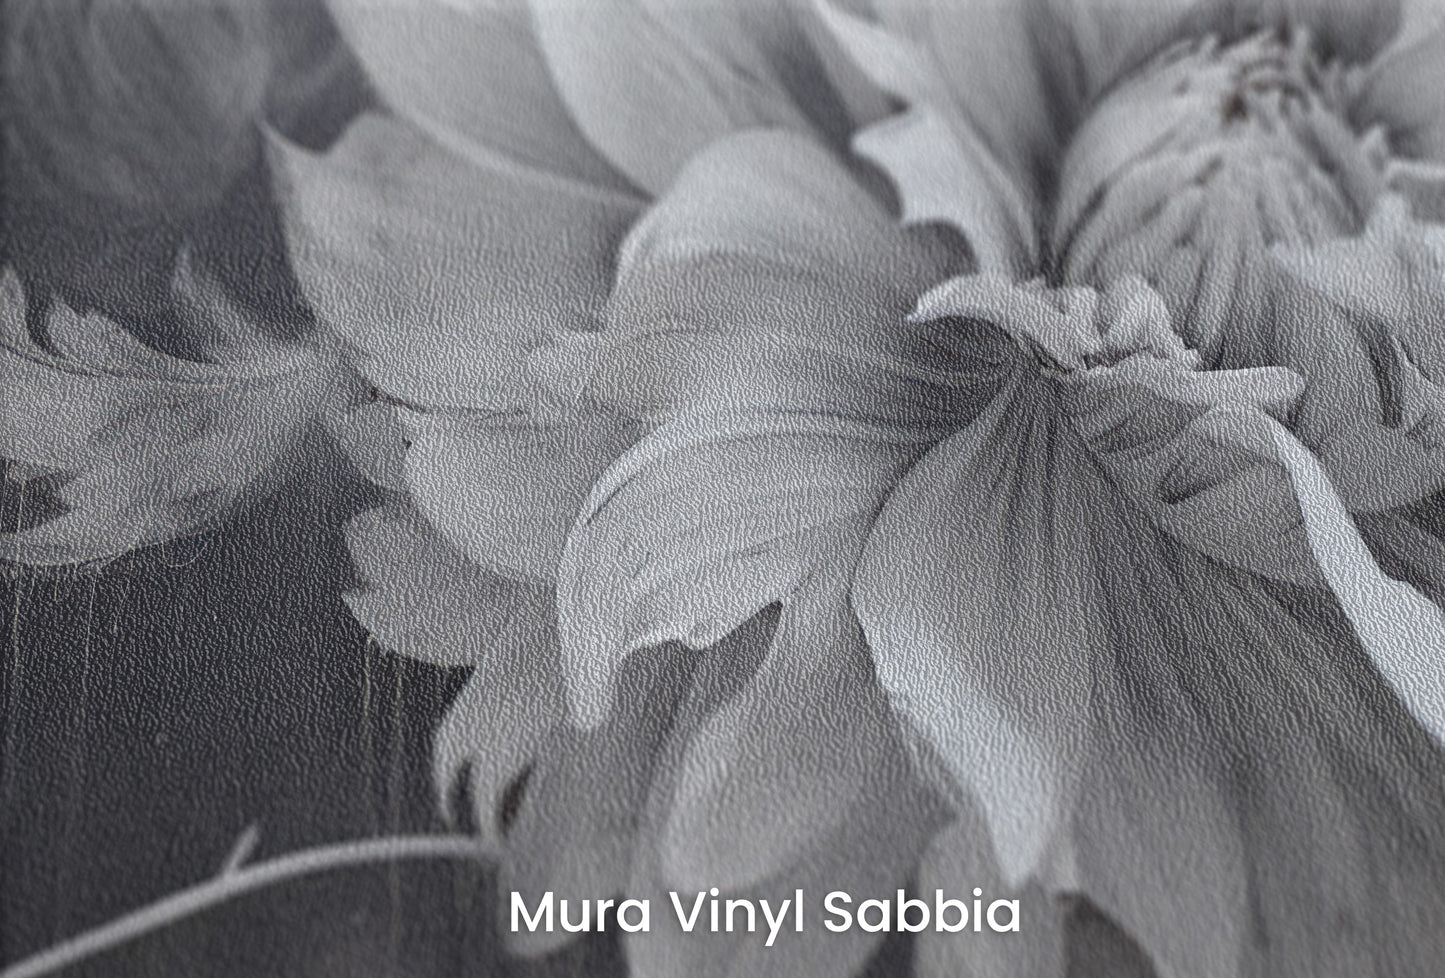 Zbliżenie na artystyczną fototapetę o nazwie TWILIGHT FLORAL FANTASY na podłożu Mura Vinyl Sabbia struktura grubego ziarna piasku.